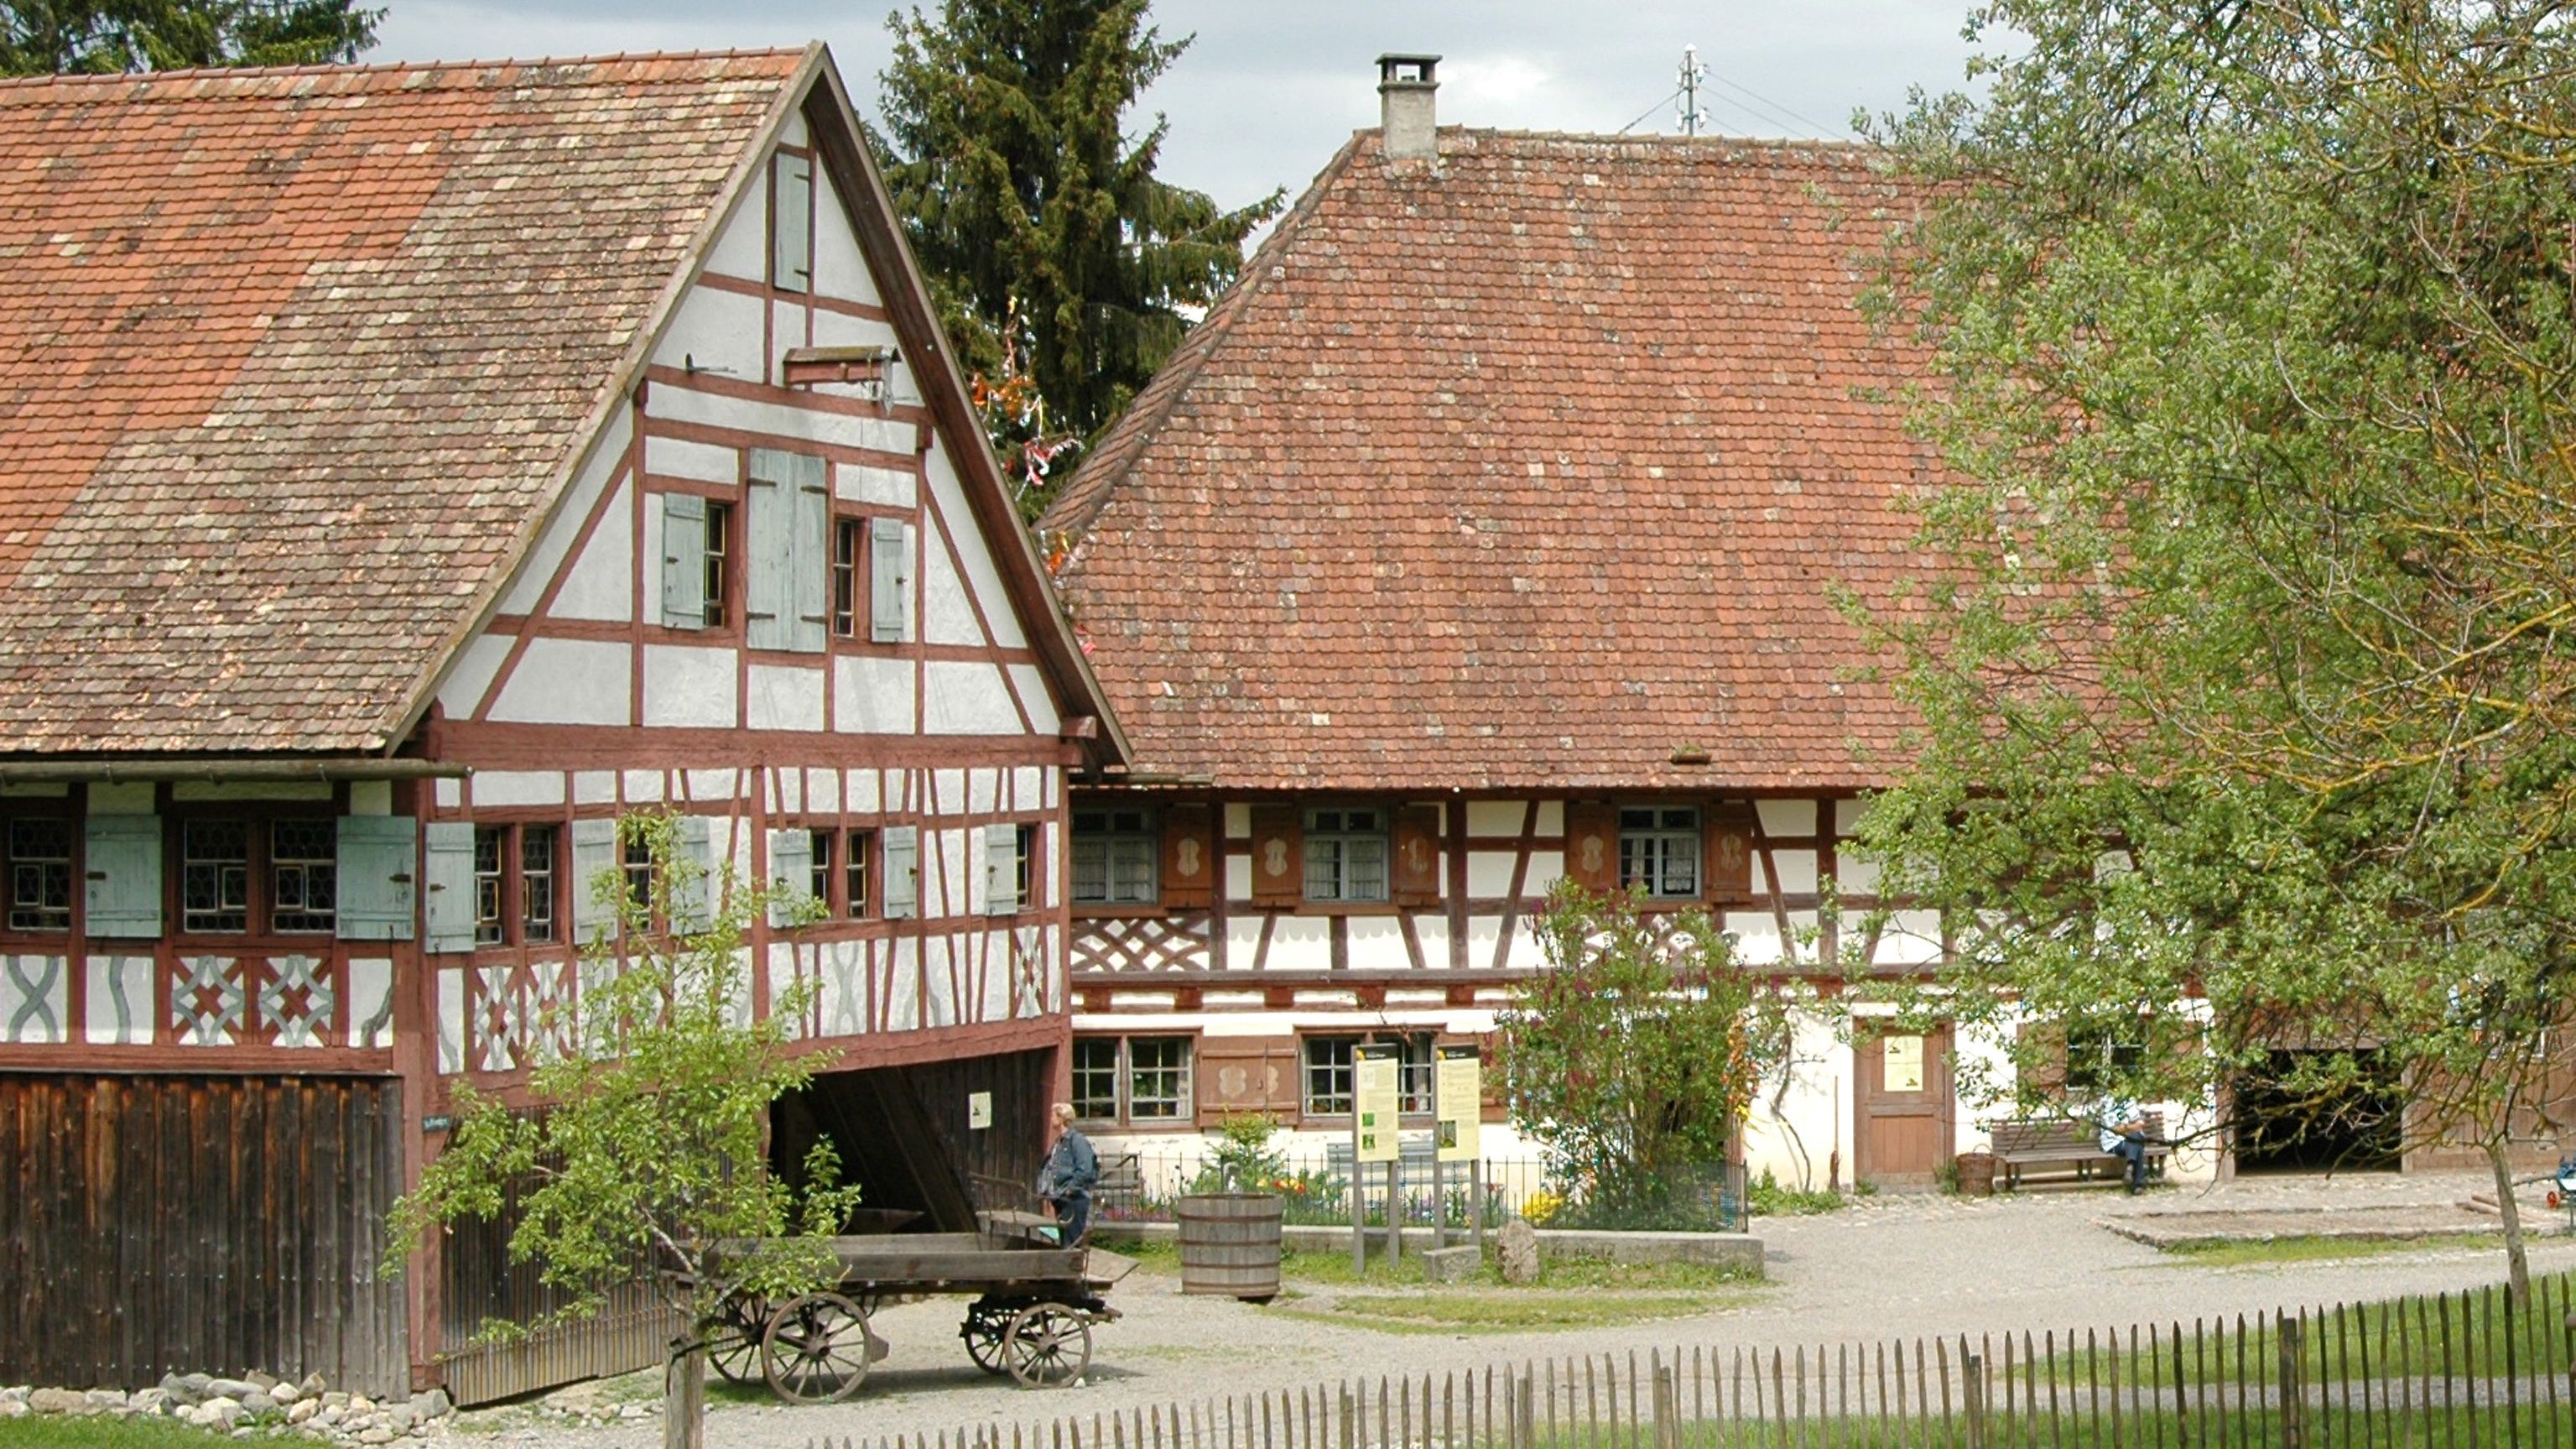   Bauernhaus-Museum Allgäu-Oberschwaben Wolfegg 